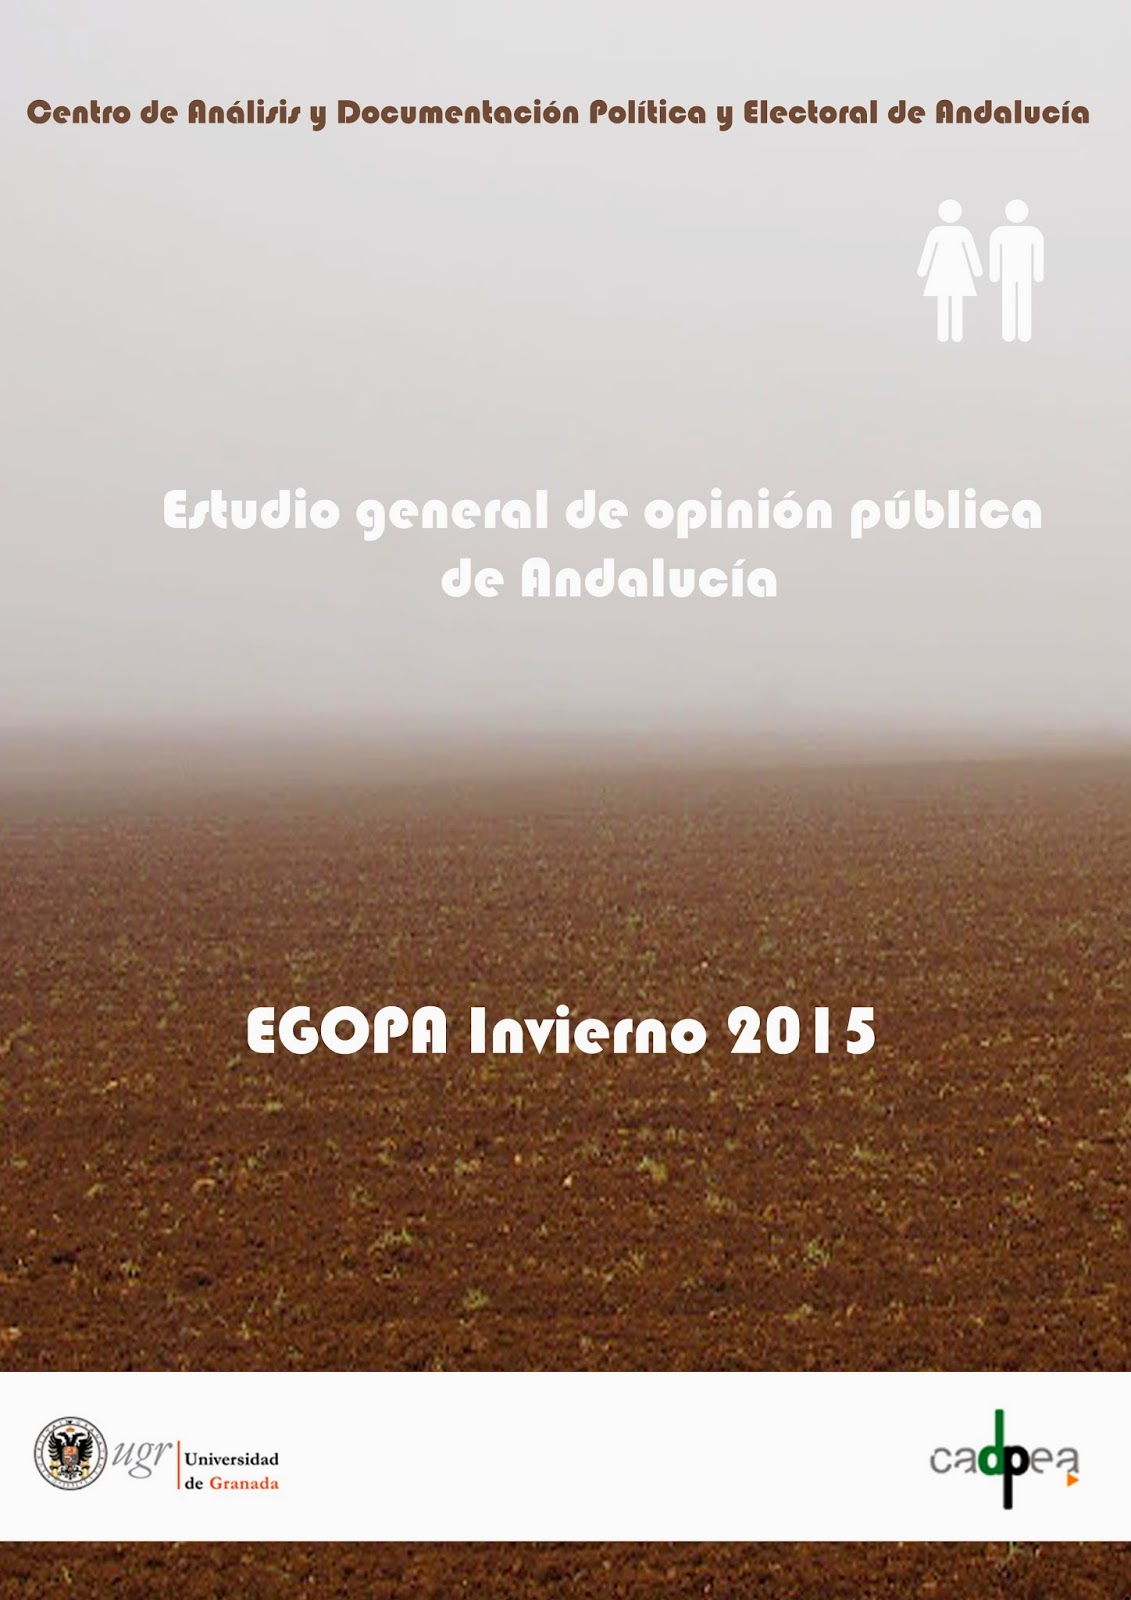 http://www.cadpea.org/documentos/EGOPA/EGOPA_67/EGOPA%20Invierno%202015.pdf